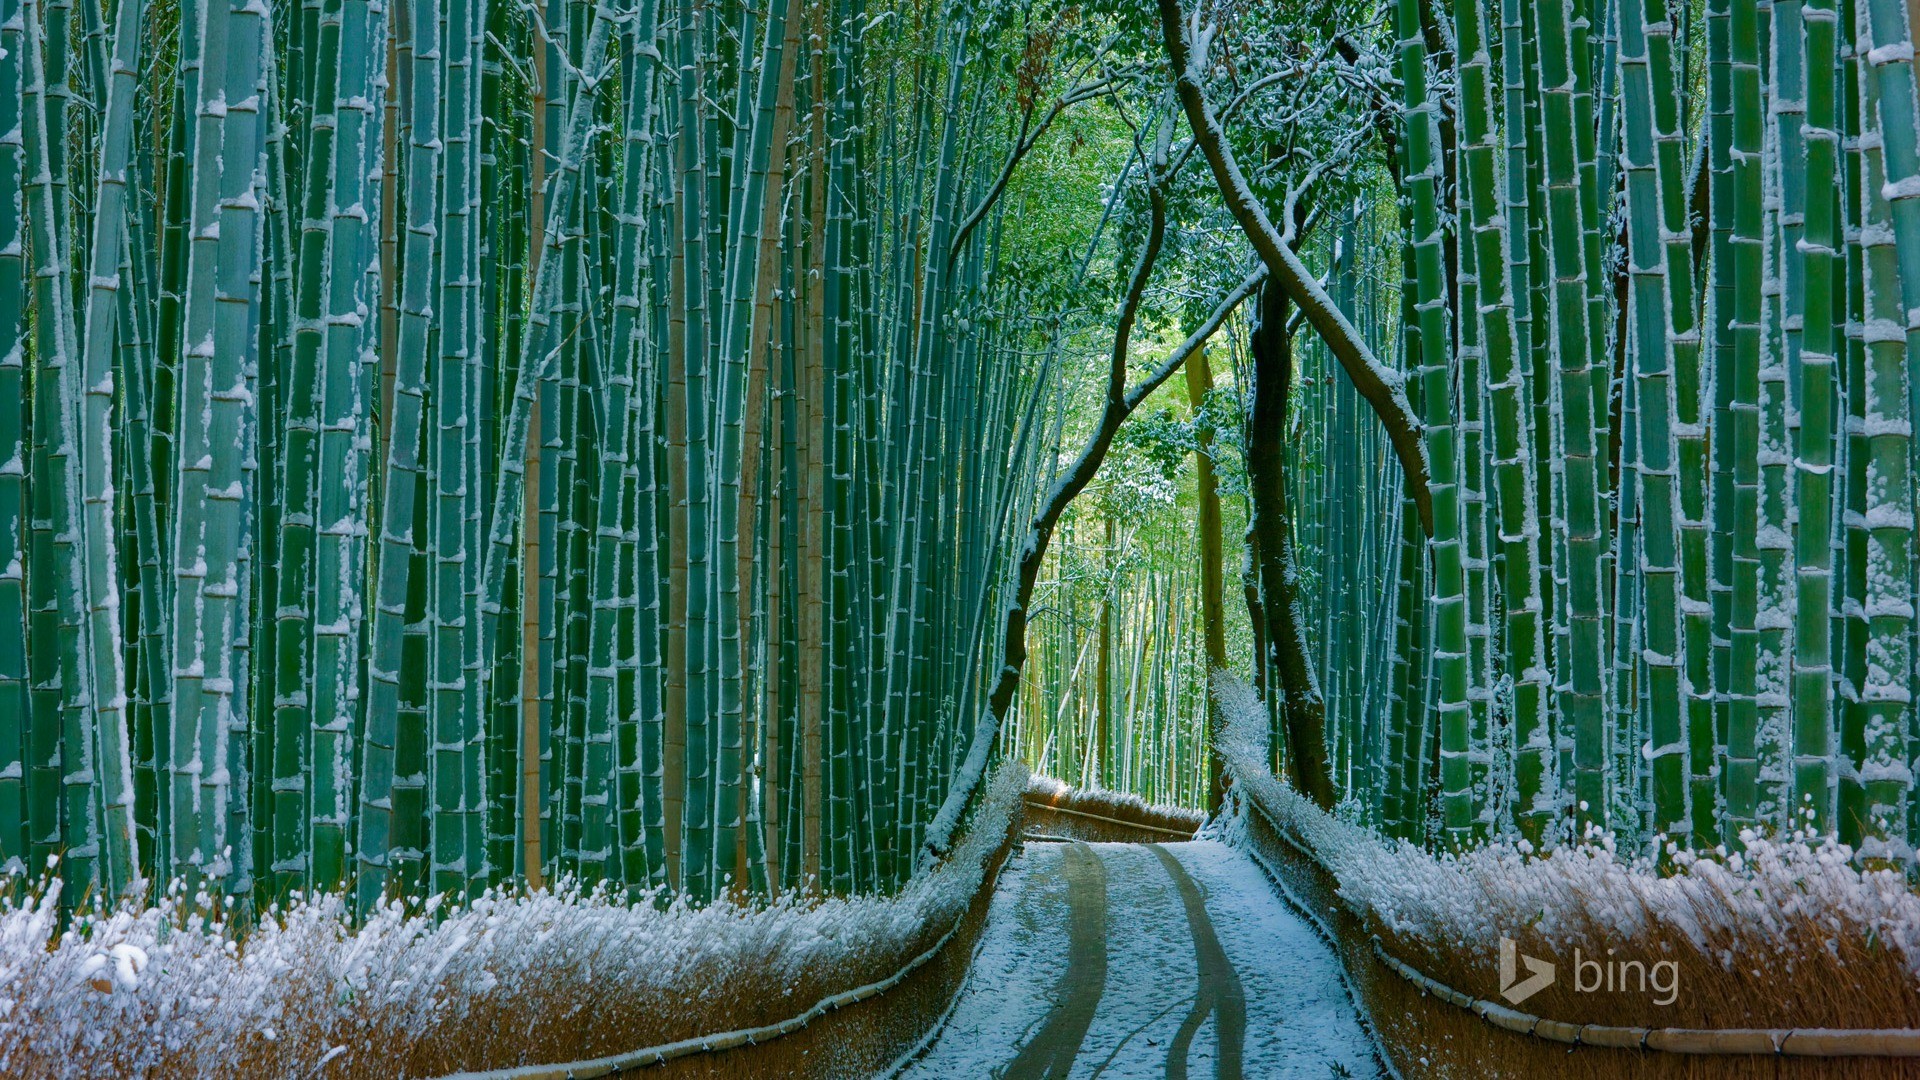 1920x1080 Japan Bamboo Forest Arashiyama-2016 Bing Desktop Wallpaper -   wallpaper download